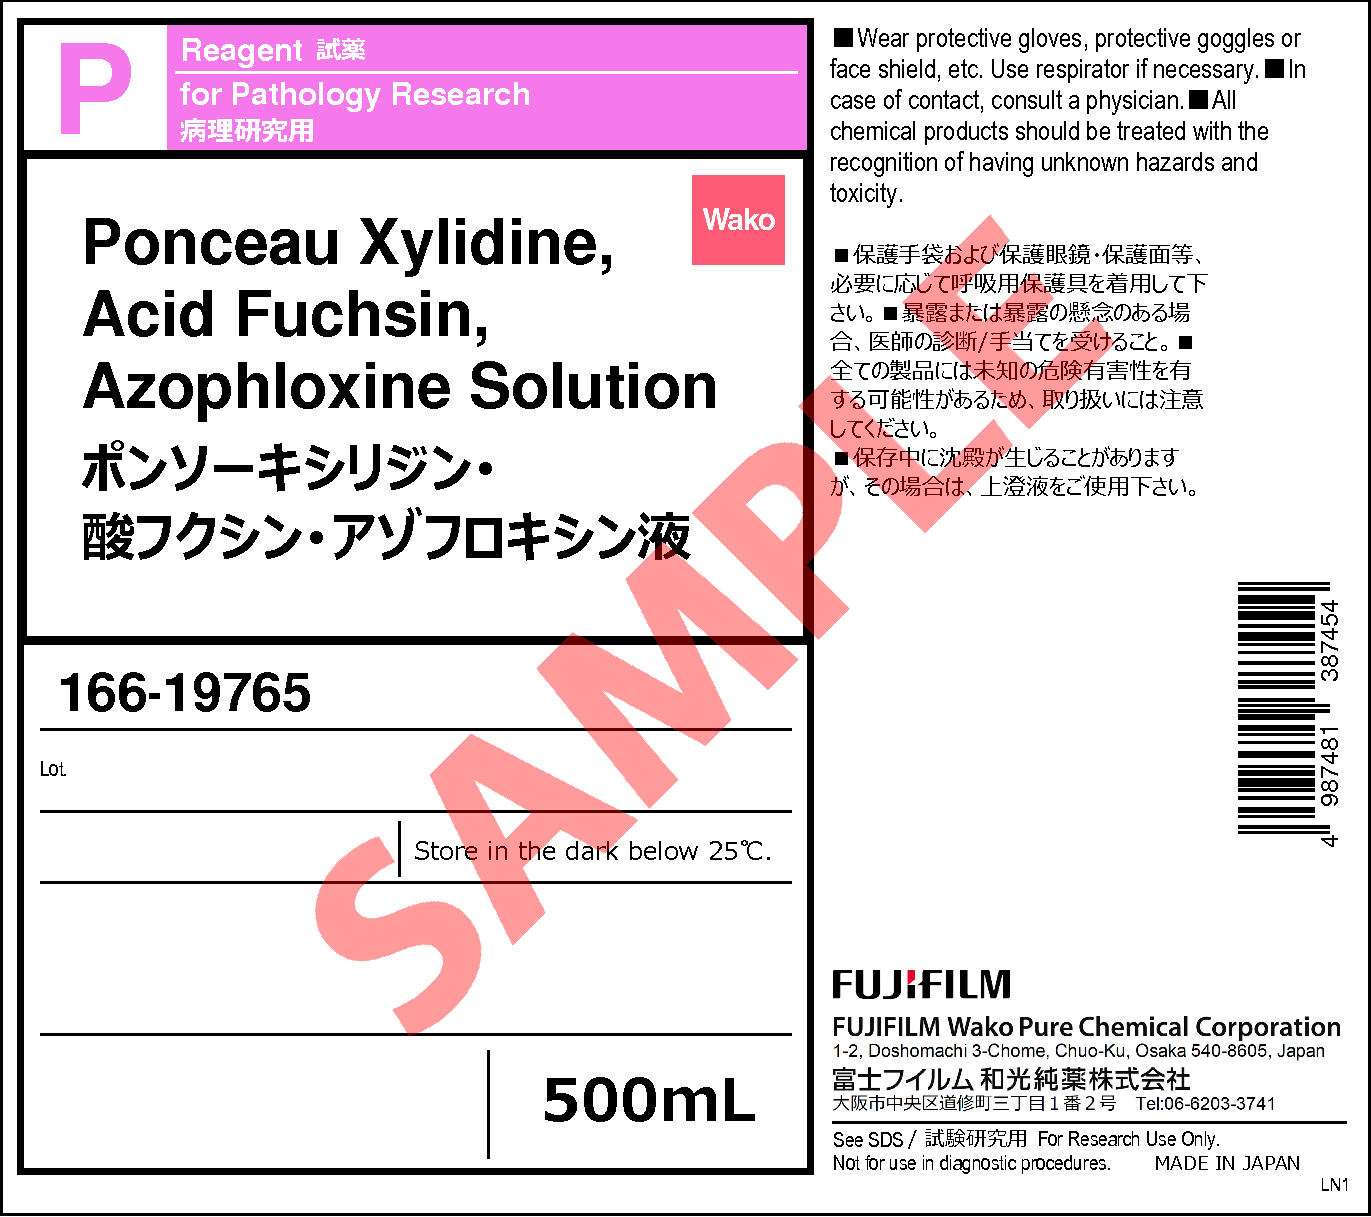 ポンソーキシリジン・酸フクシン・アゾフロキシン液・Ponceau Xylidine 